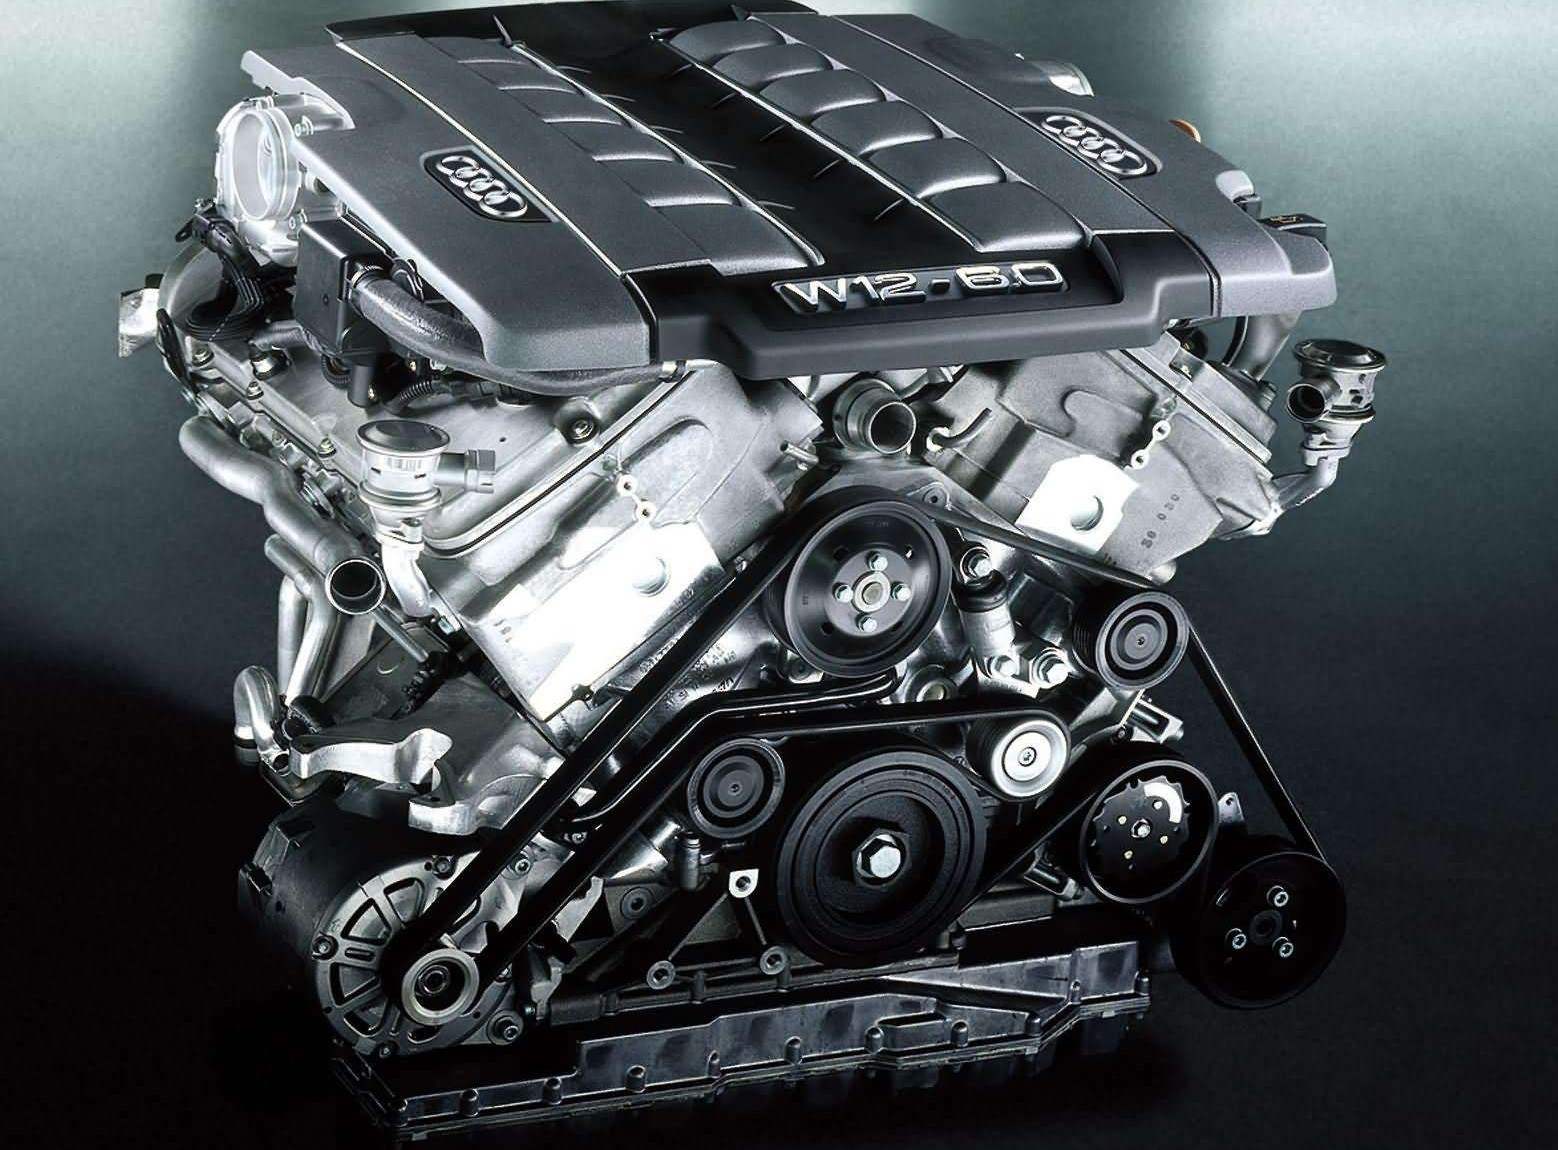 Компактный алюминиевый 6-литровый двигатель W12 (его длина 513 и ширина 690 мм) в совокупности со вспомогательными агрегатами занимает практически все подкапотное пространство